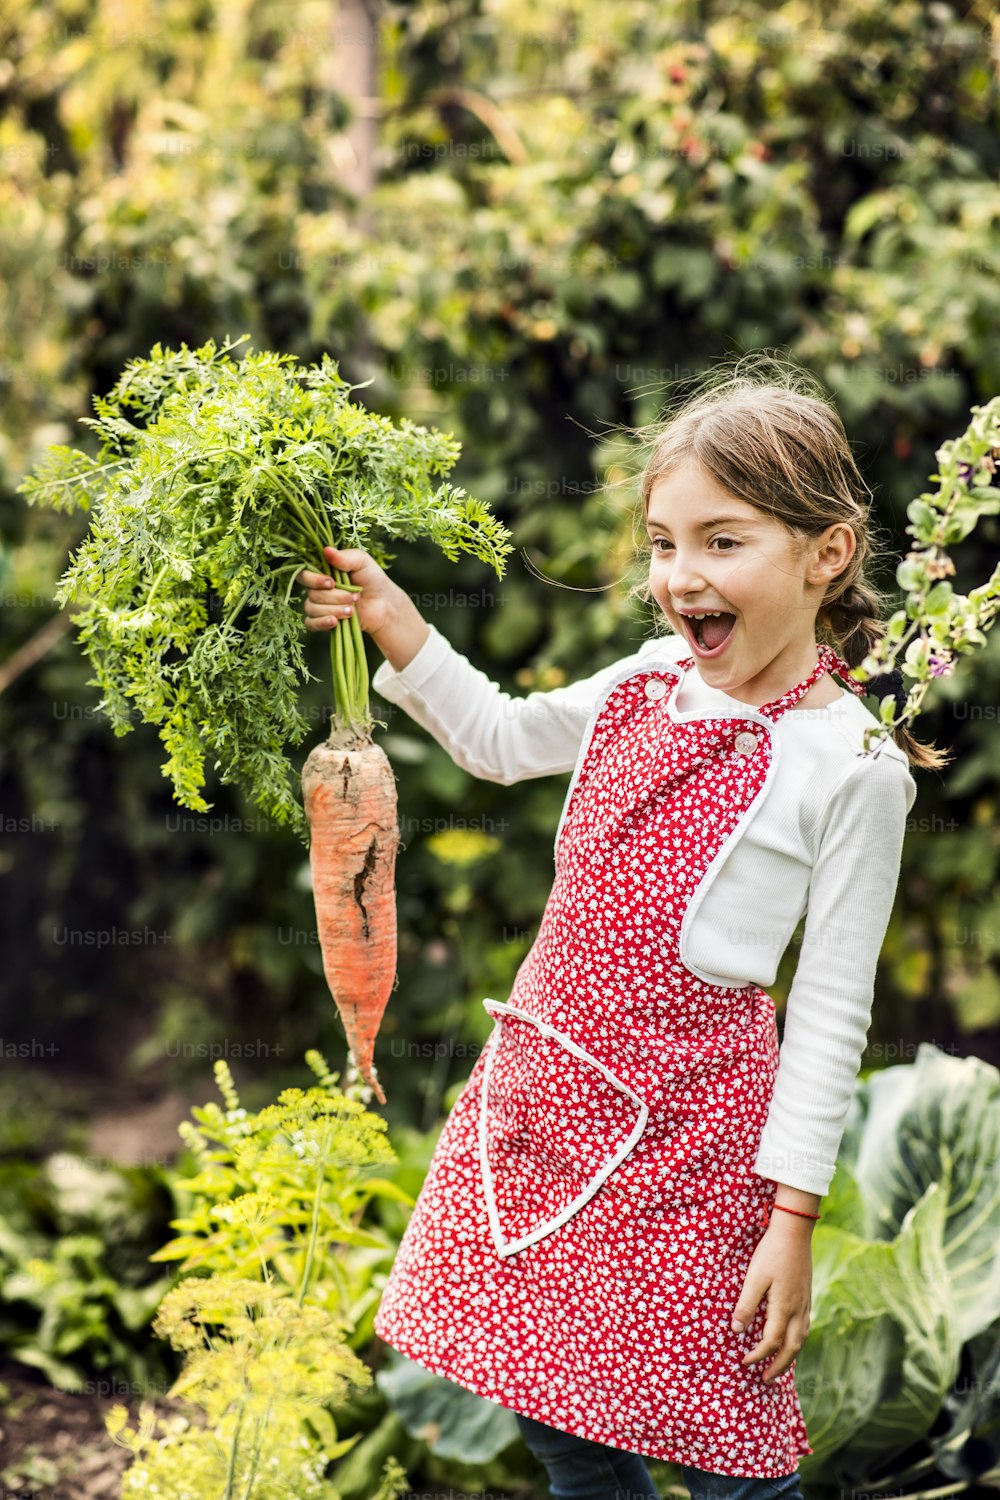 Une petite fille récoltant des légumes sur un potager. Fille jardinant, tenant une grosse carotte.